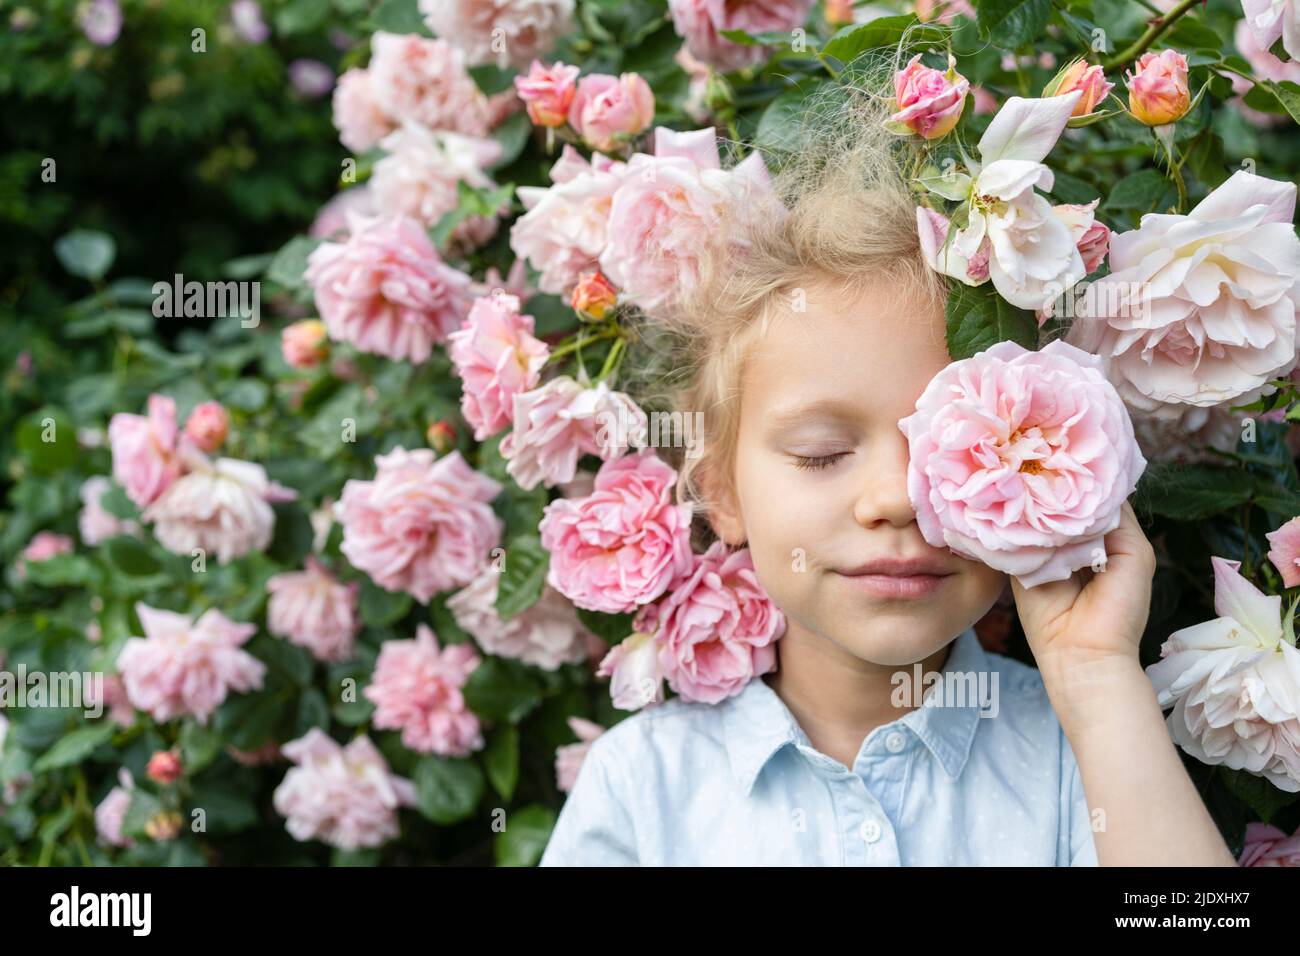 Girl holding rose flower in front of eye at rose garden Stock Photo